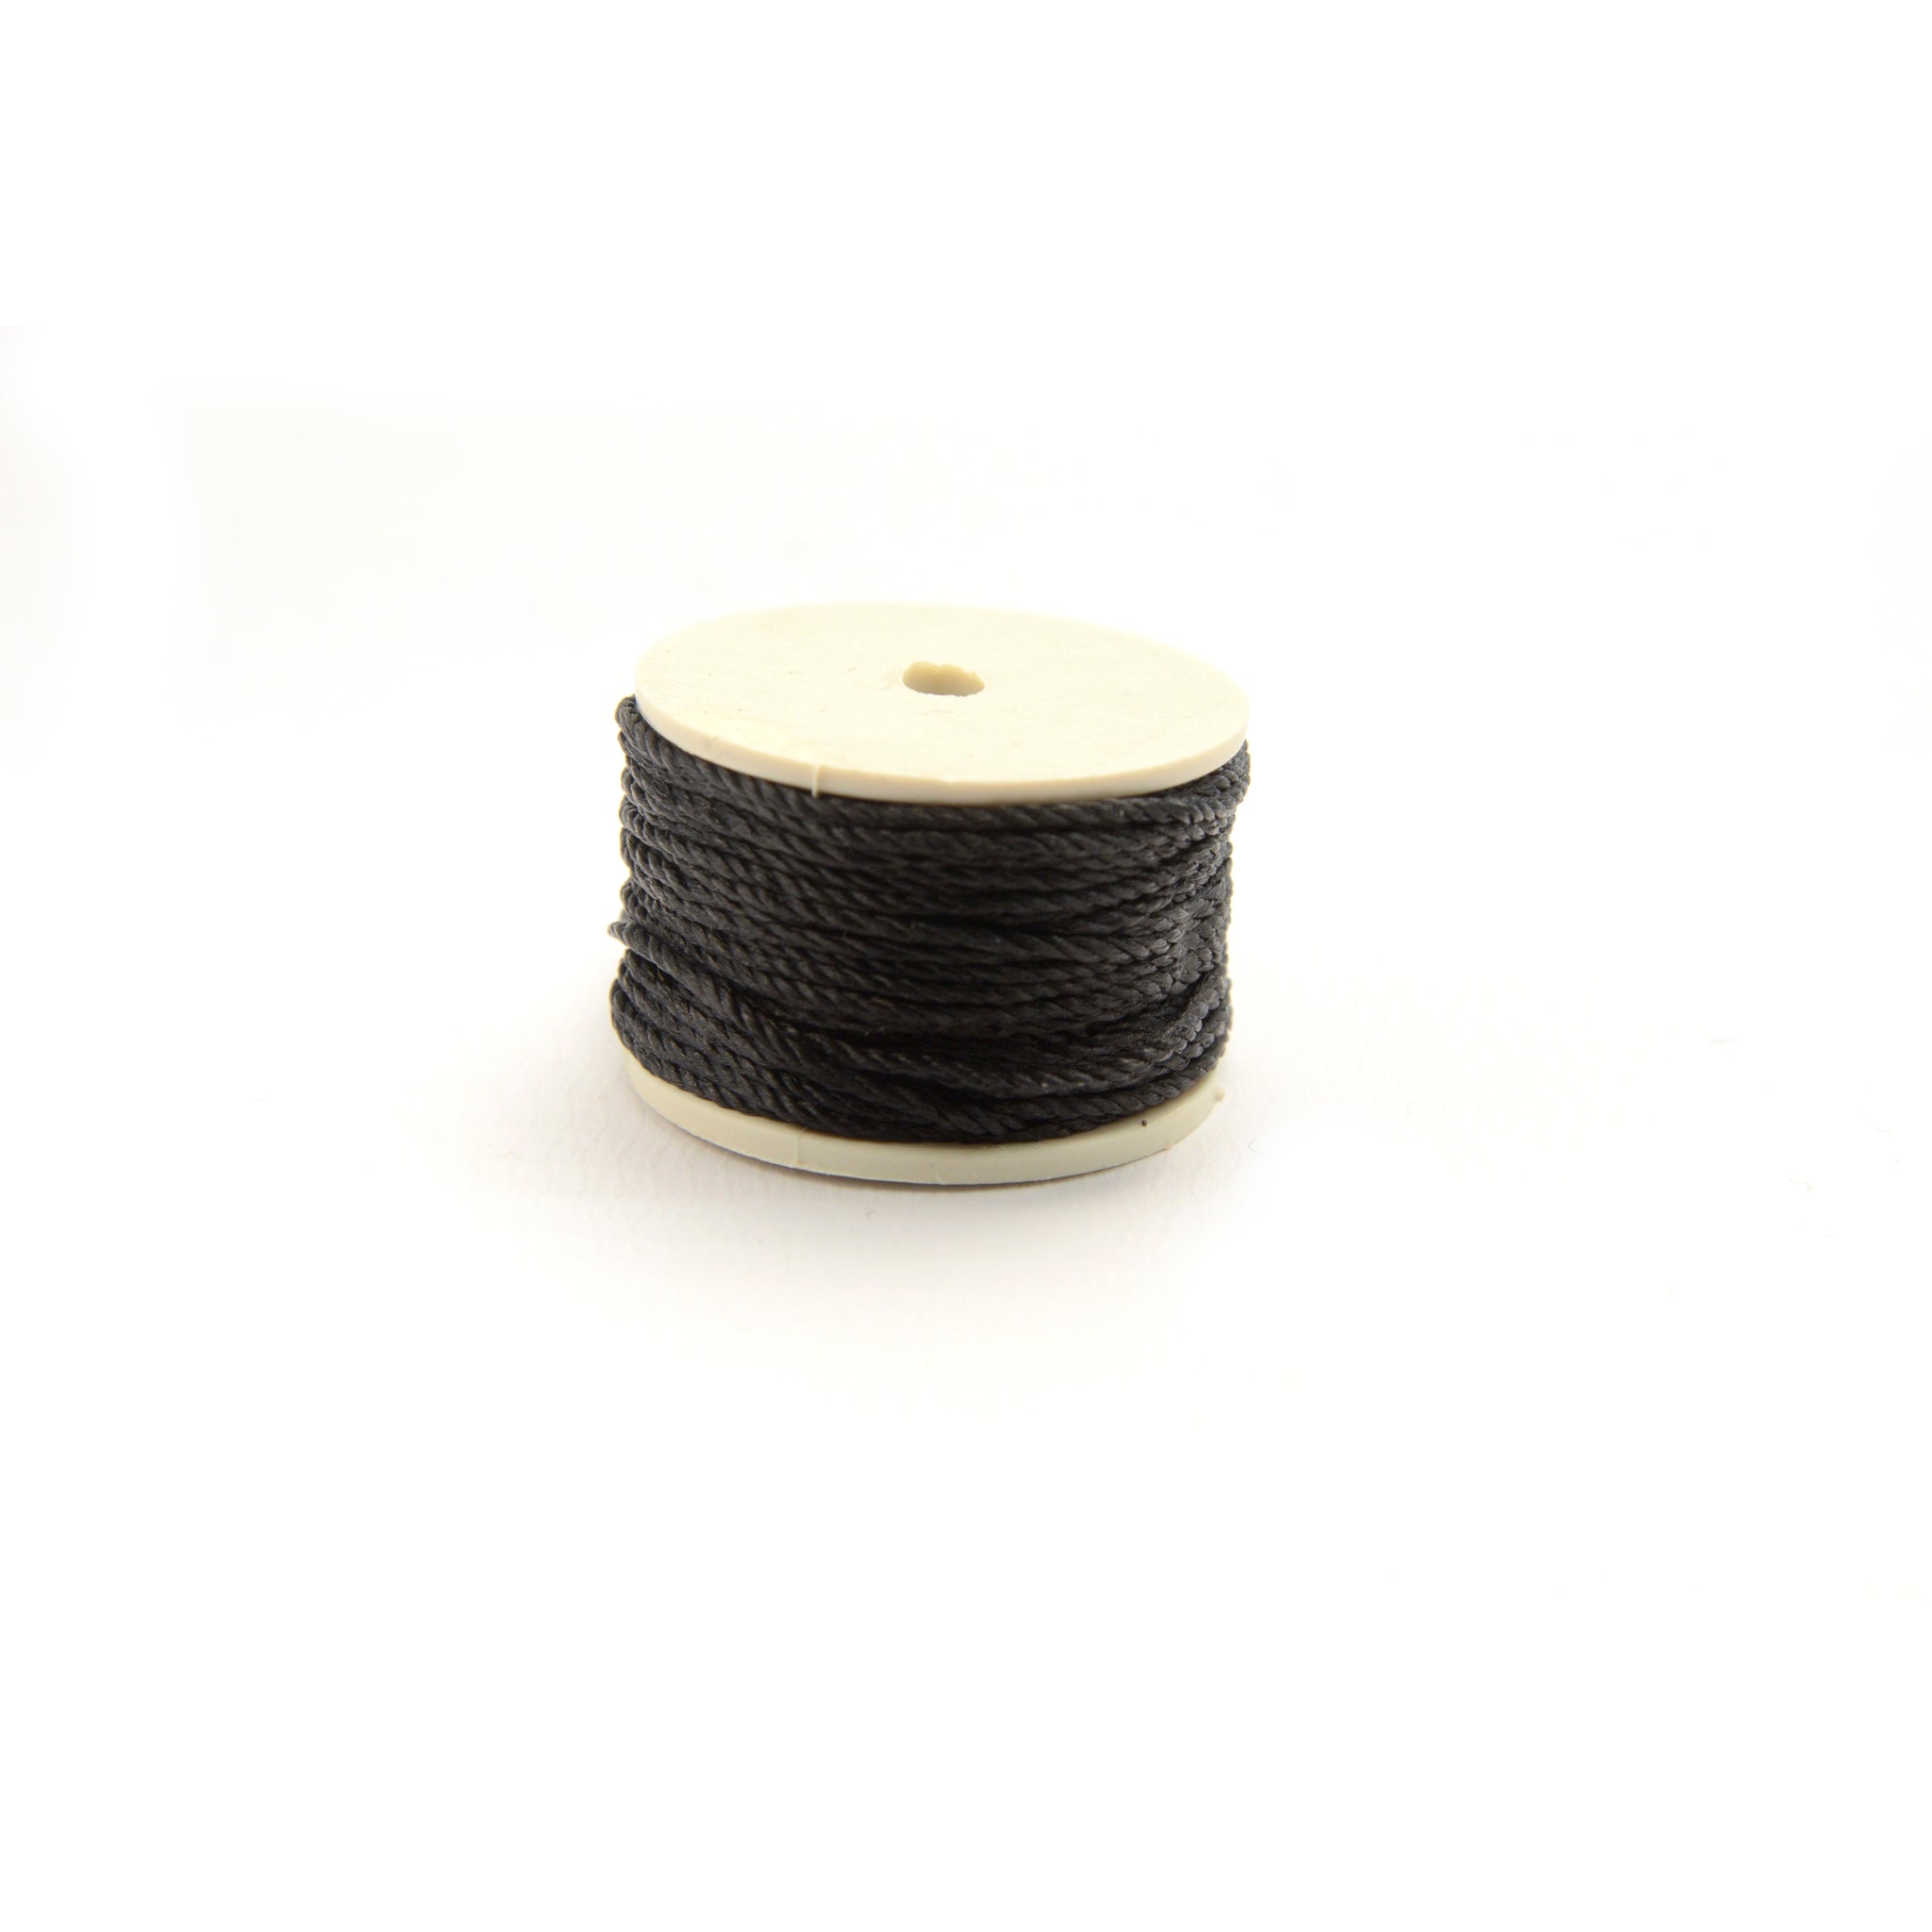 Black 12.5 yards Lockstitch Sewing Awl Thread Spool from Identity Leathercraft